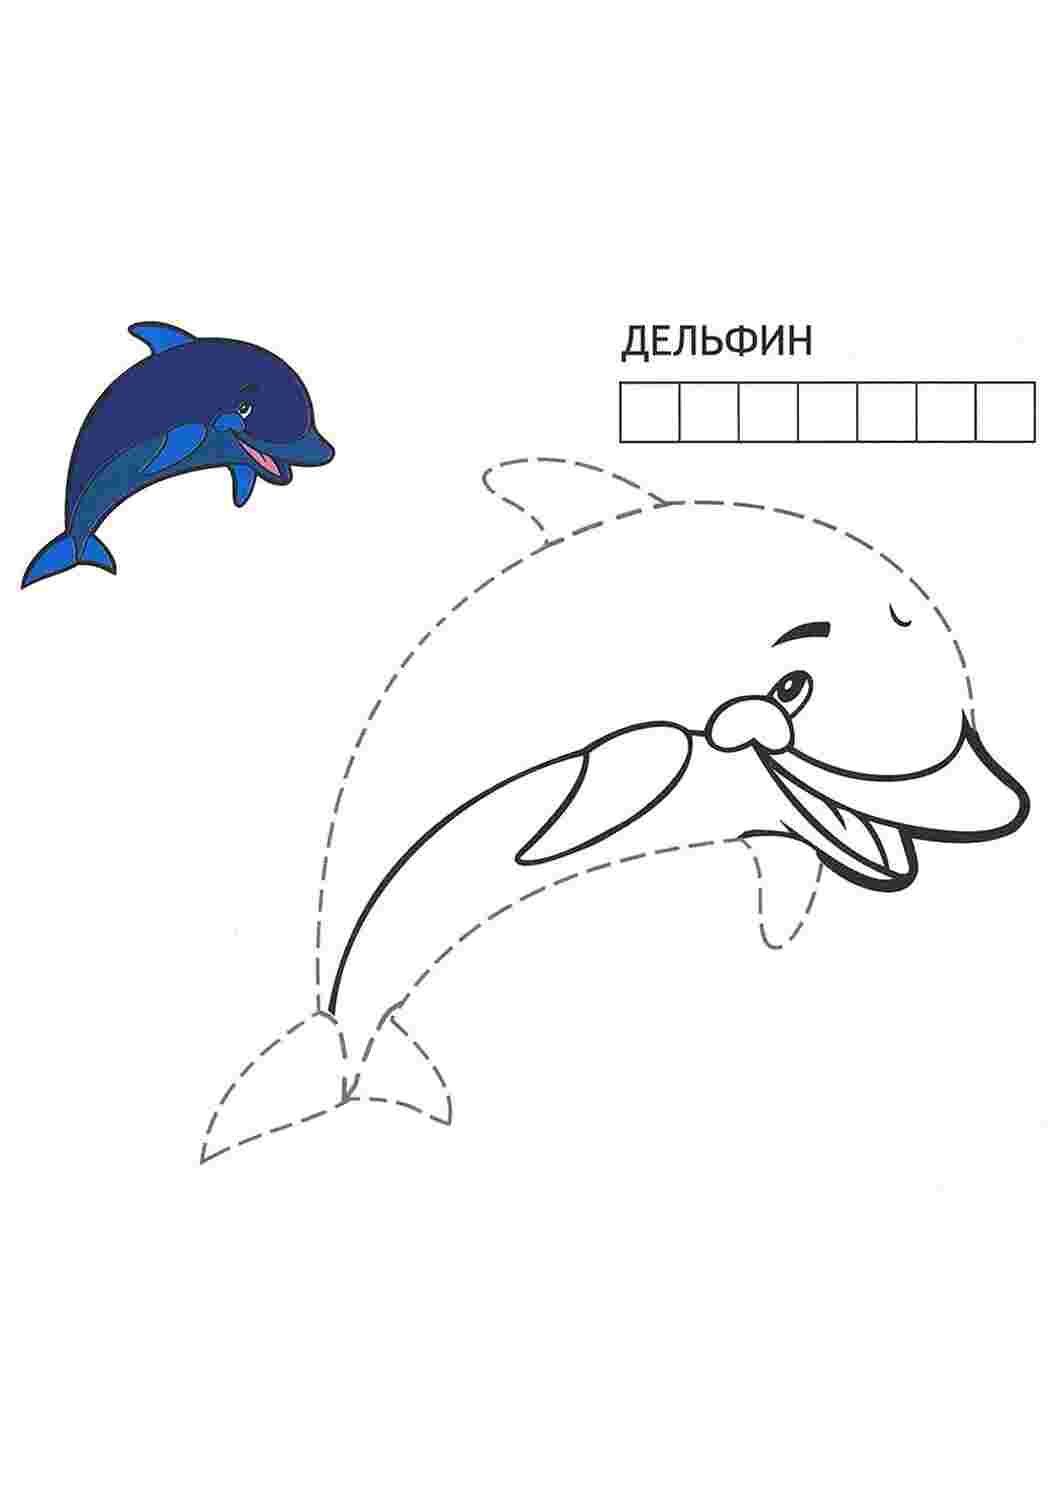 Дельфин по точкам